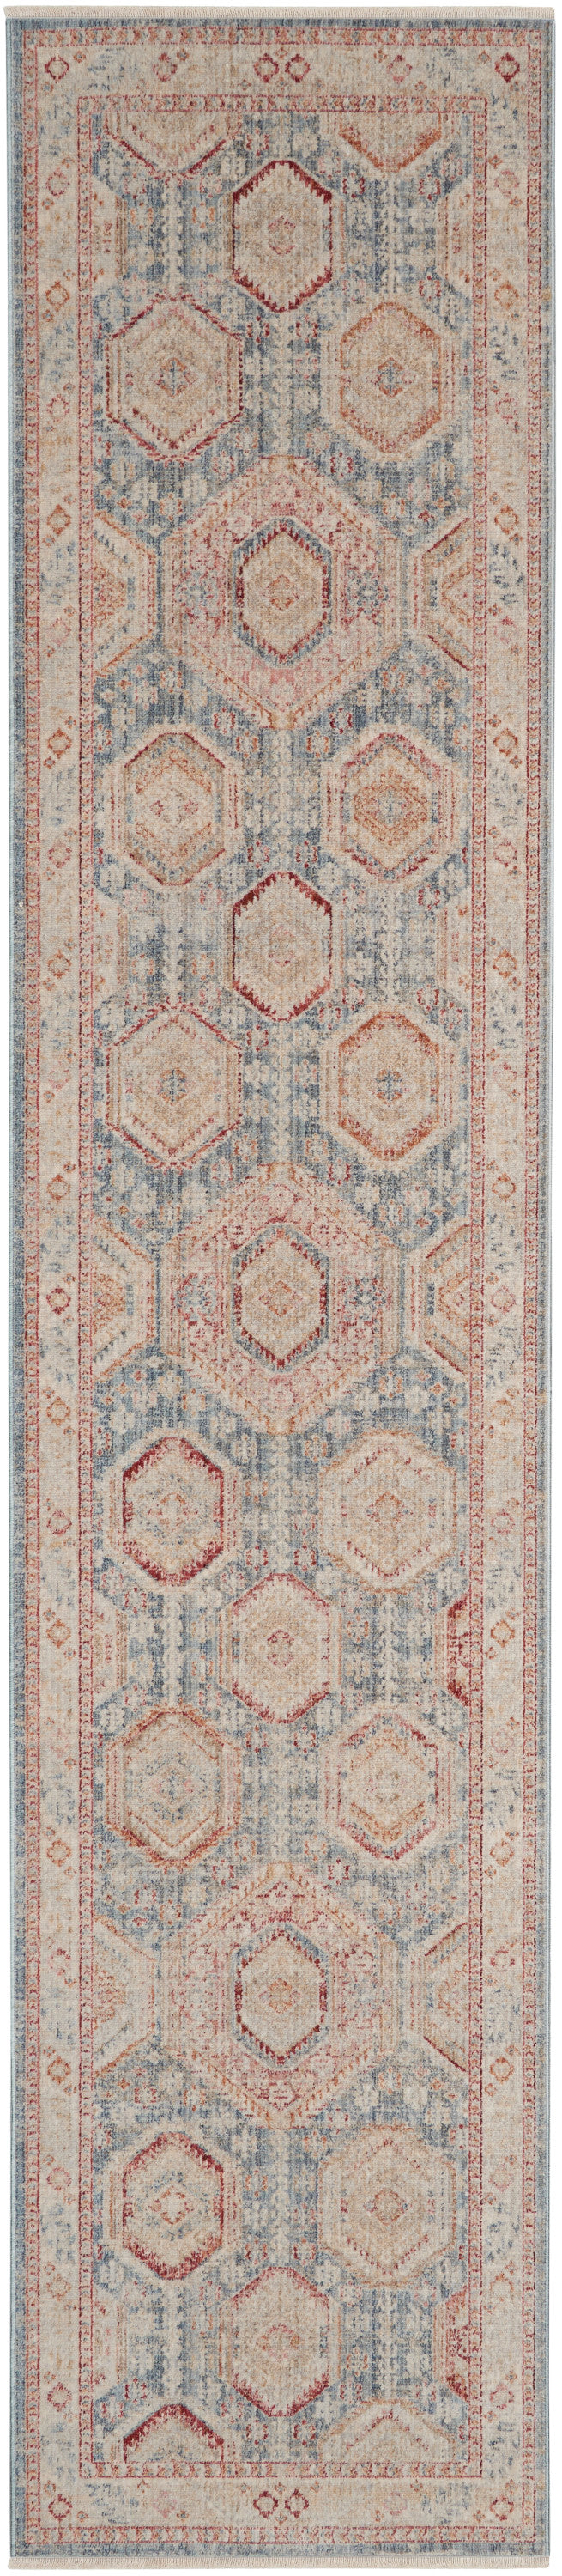 homestead light blue multi rug by nourison 99446767356 redo 2